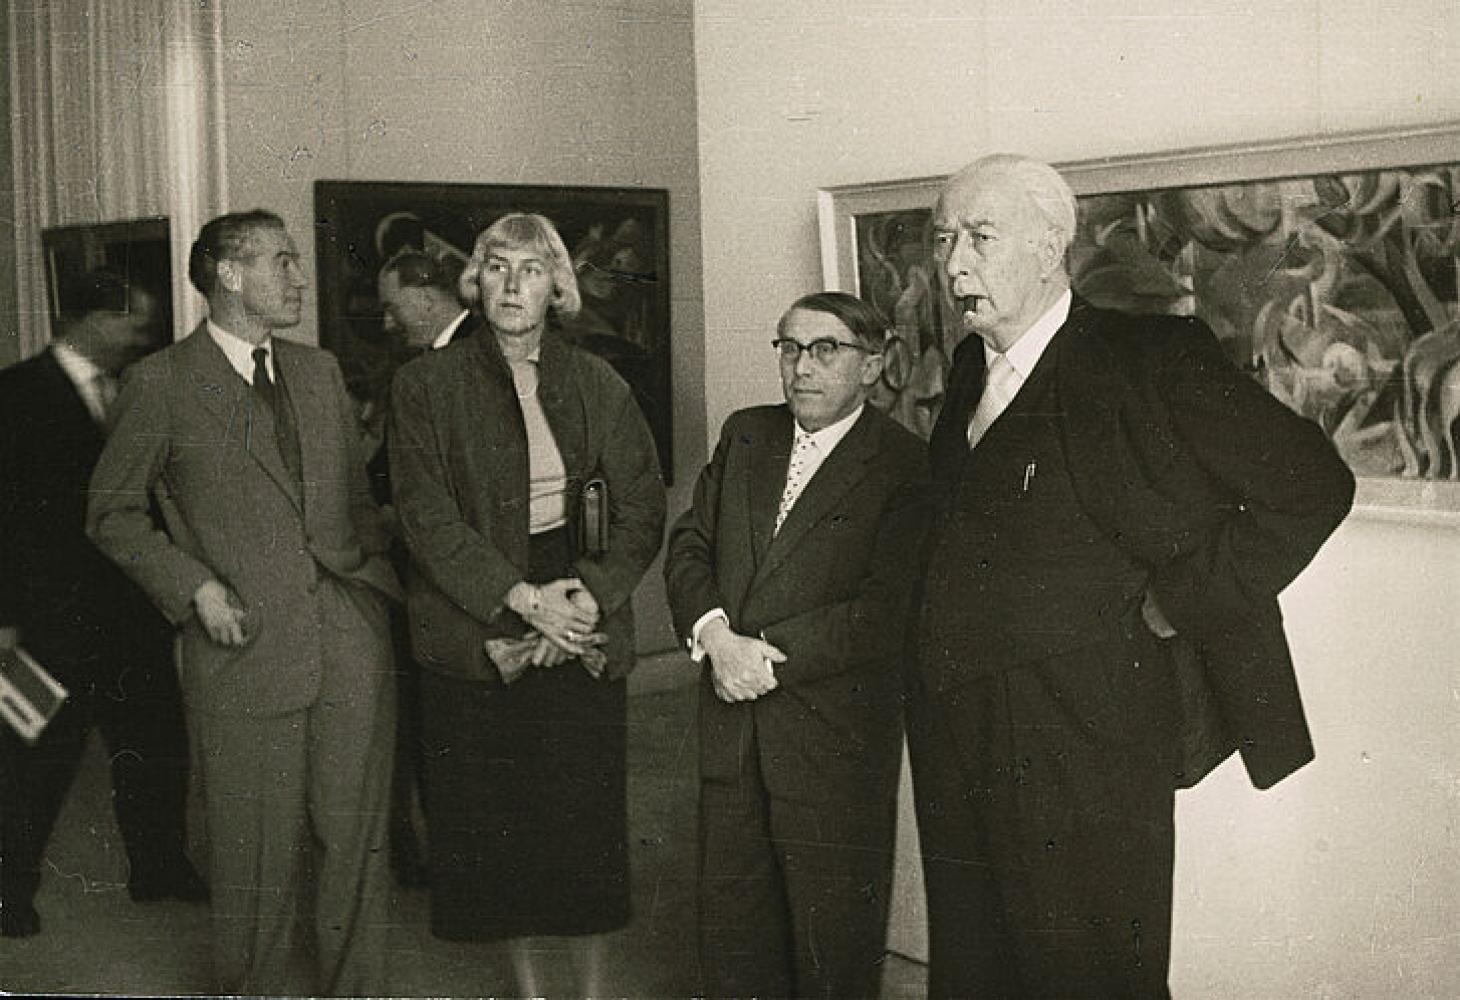 Bundespräsident Theodor Heuss auf der ersten documenta, links neben ihm: Arnold Bode